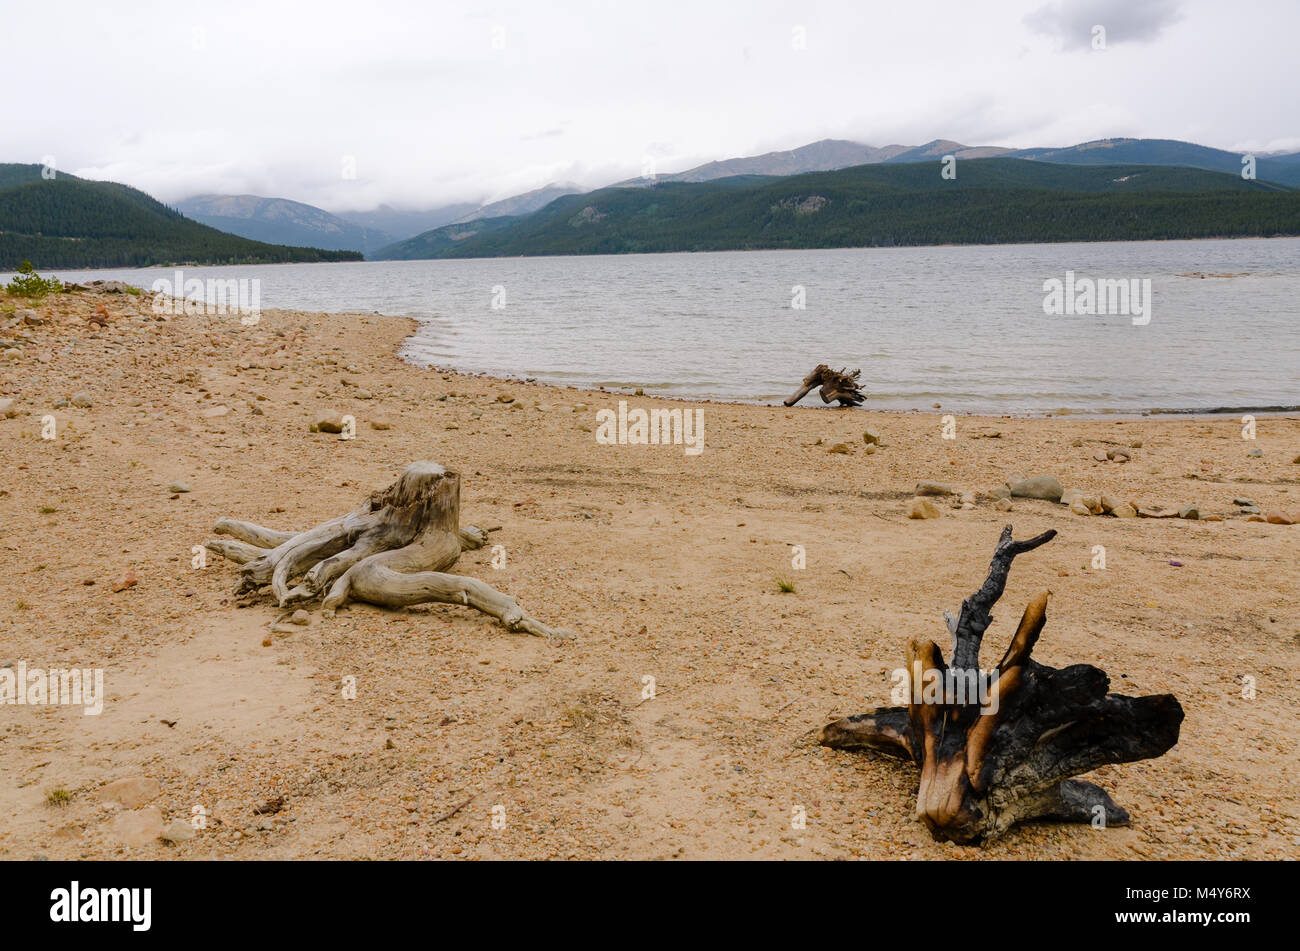 Tre grandi pezzi di driftwood, grandi come tronchi di alberi, sedersi sparse su una spiaggia sulle rive del lago turchese in San Isabel National Forest. Foto Stock